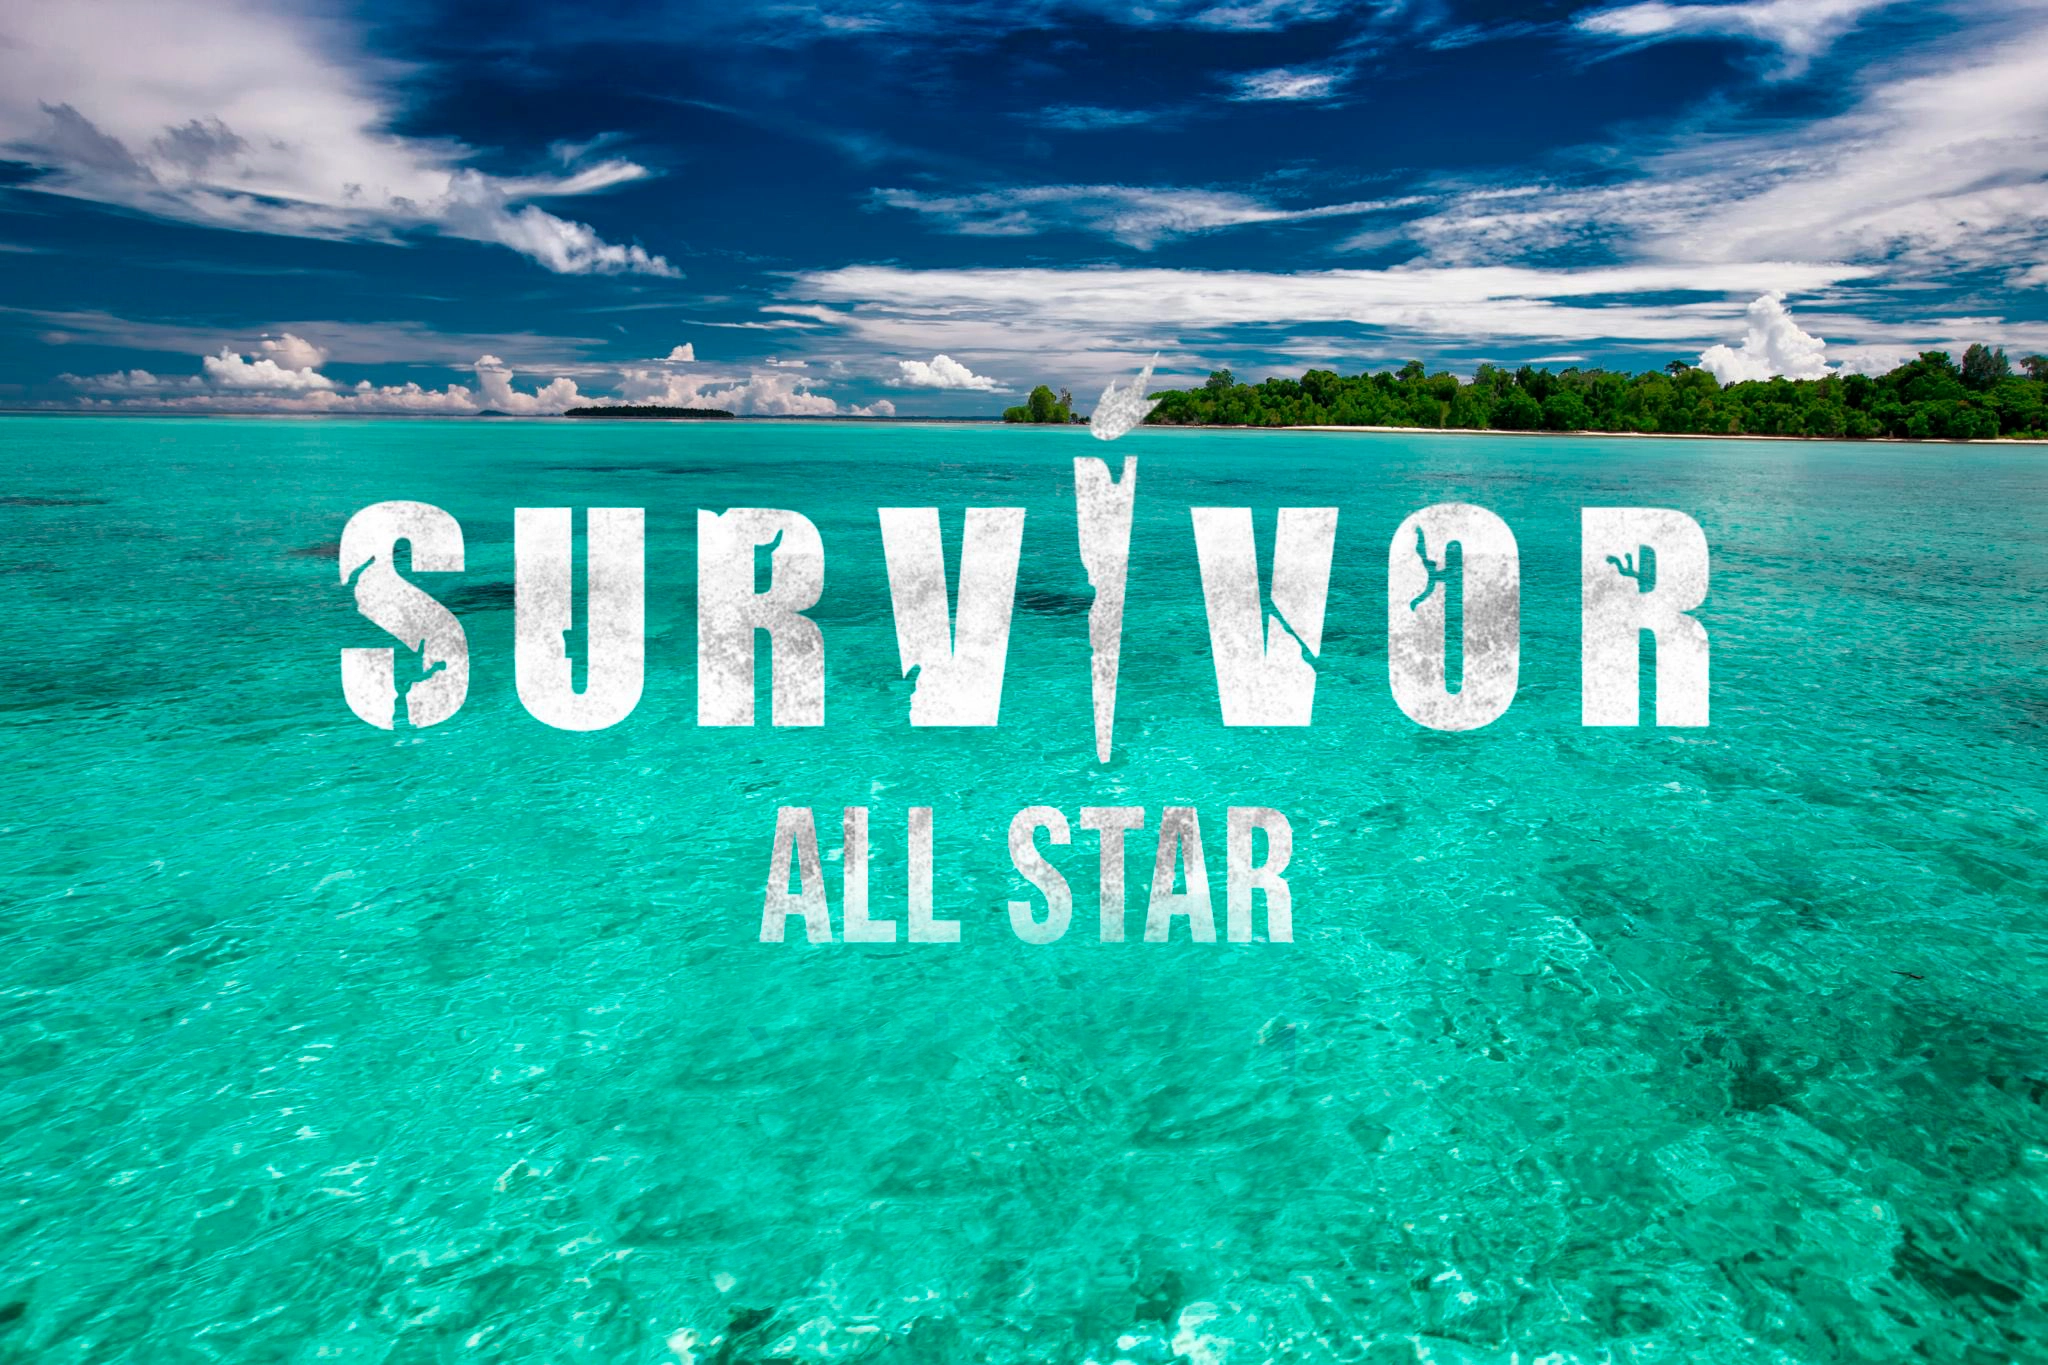 Survivor dokunulmazlık oyununu kim kazandı? 14 Şubat Survivor All Star'da dokunulmazlık oyununu kazanan hangi takım oldu?